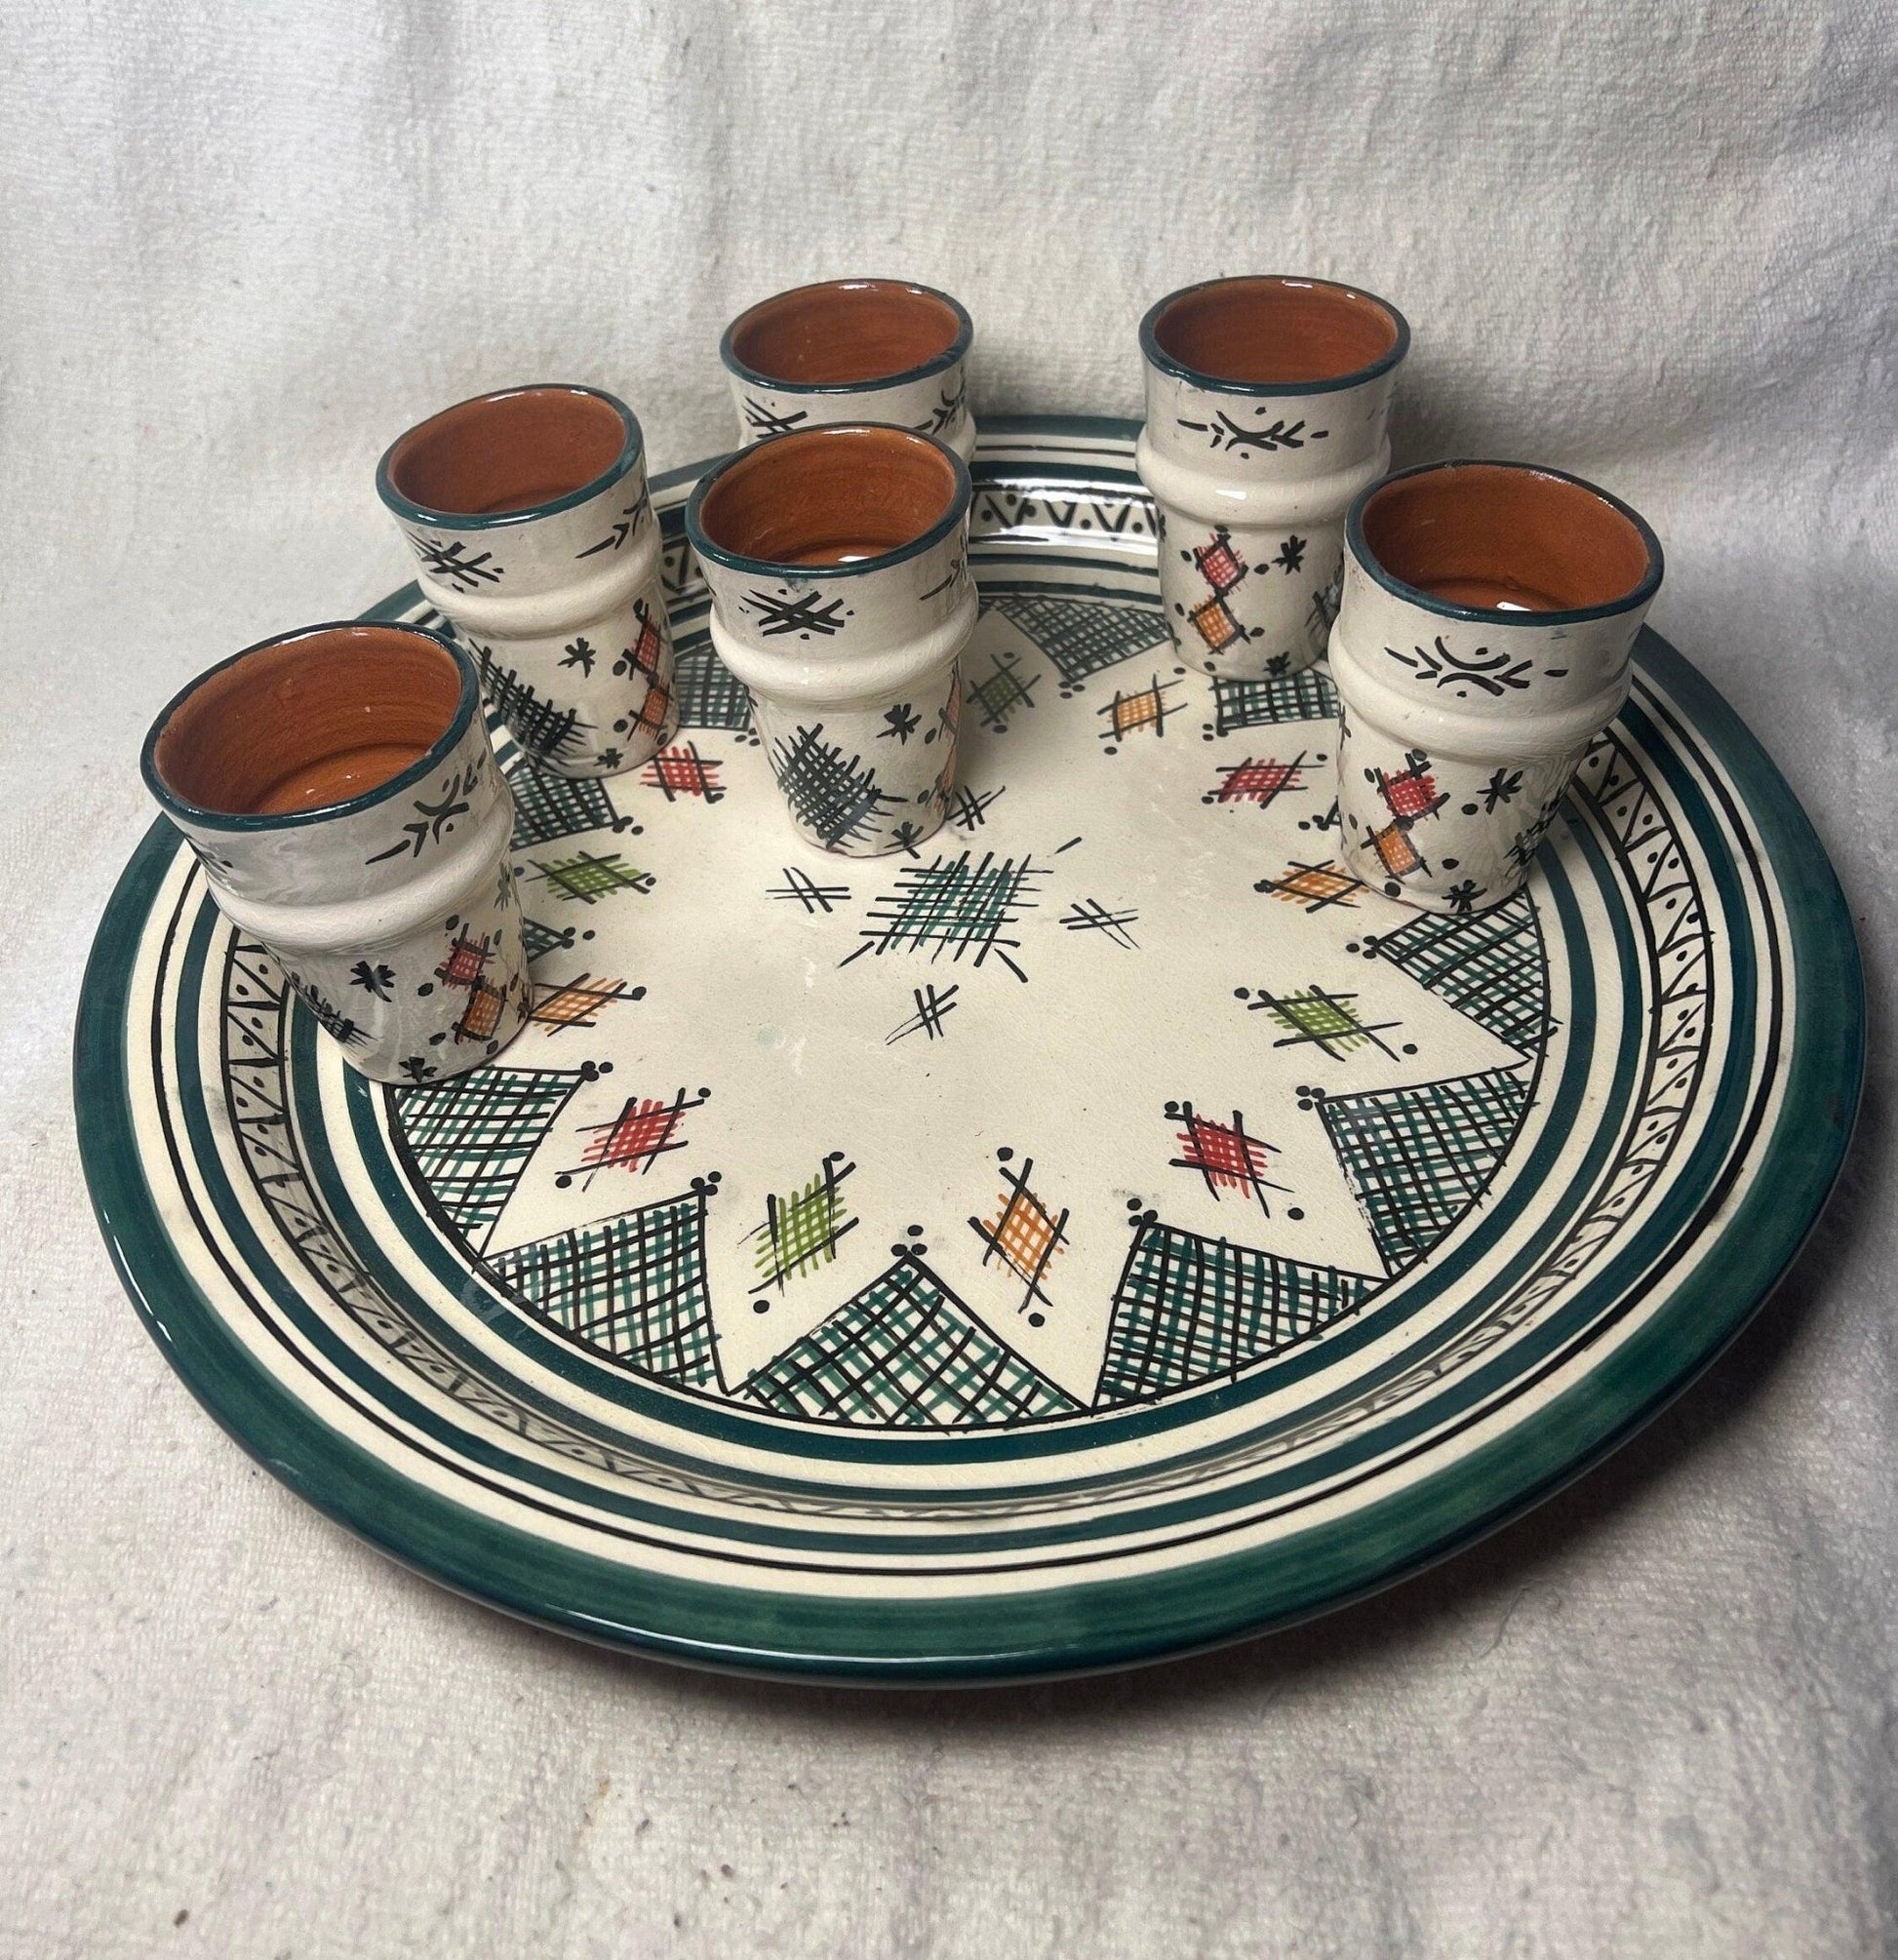 painted ceramic teapot set complete - Amazighrose